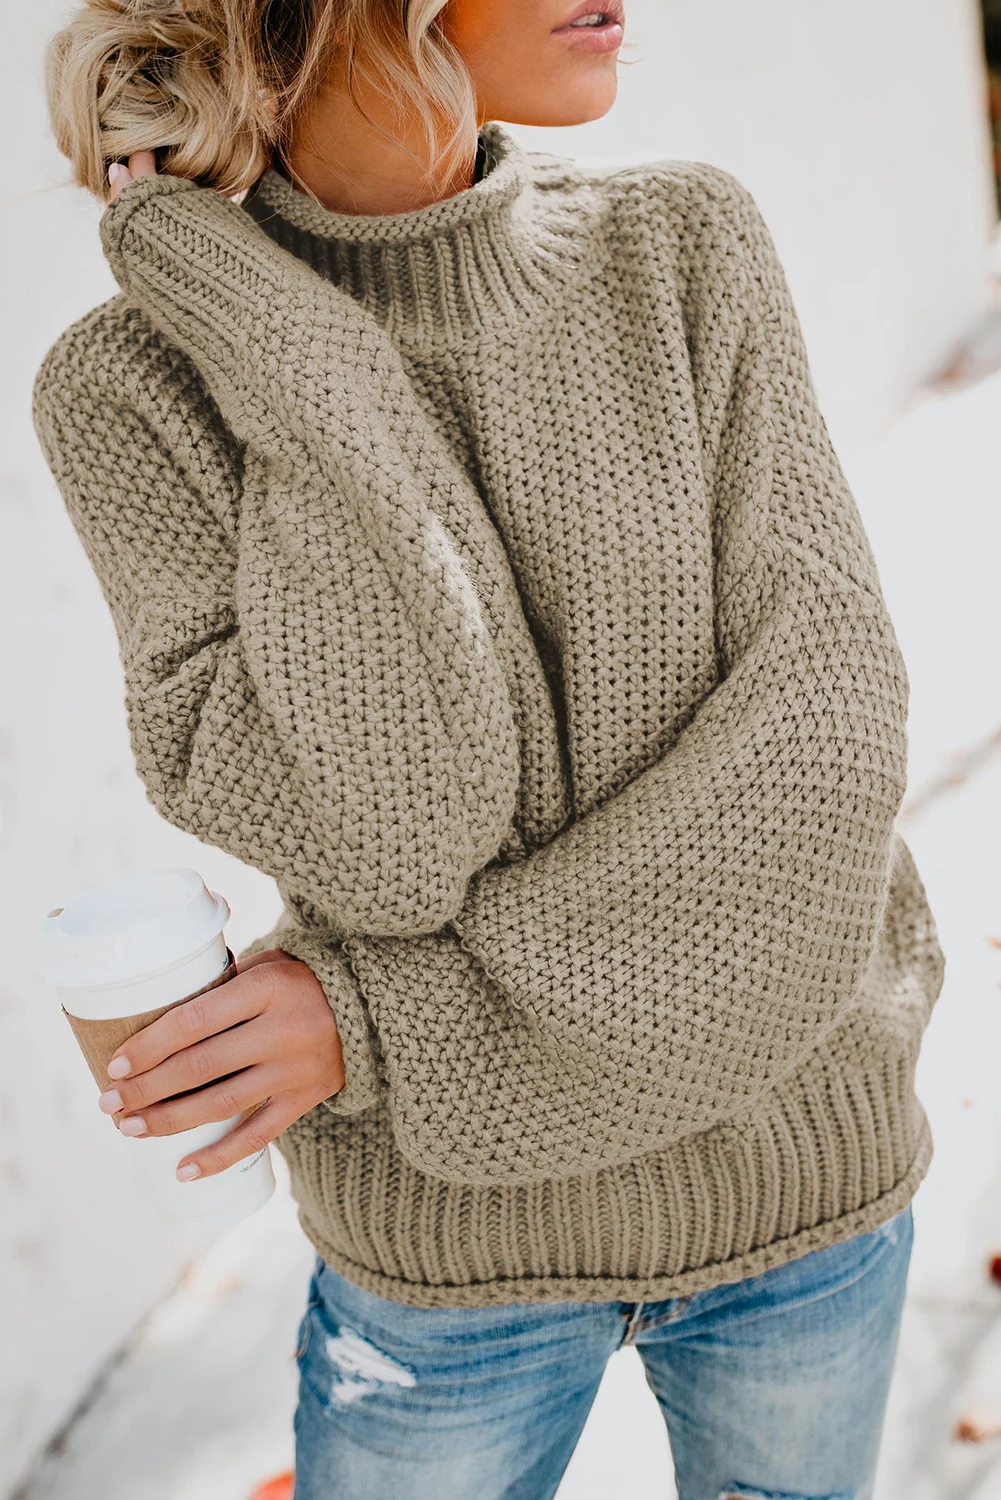 Женский трикотажный свитер с длинным рукавом, повседневная одежда на осень и зиму, 2022